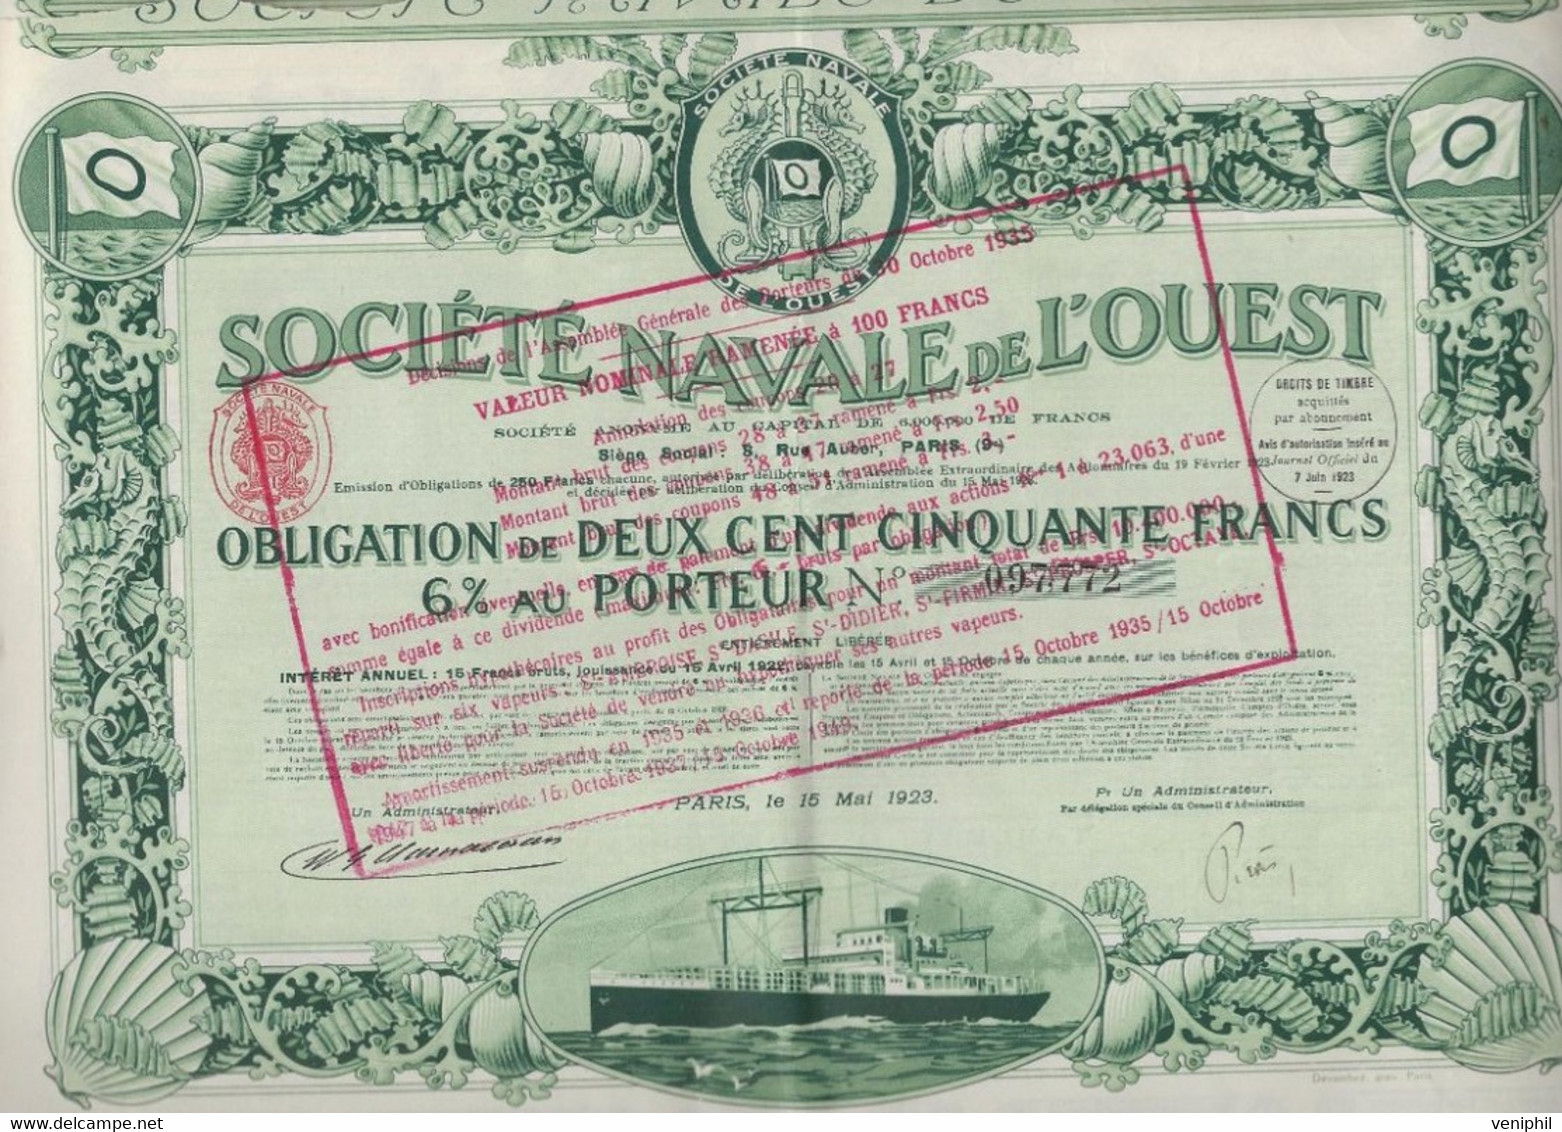 SOCIETE NAVALE DE L'OUEST -  OBLIGATION DE 250 FRS 6% AU PORTEUR - ANNEE 1923 - Scheepsverkeer